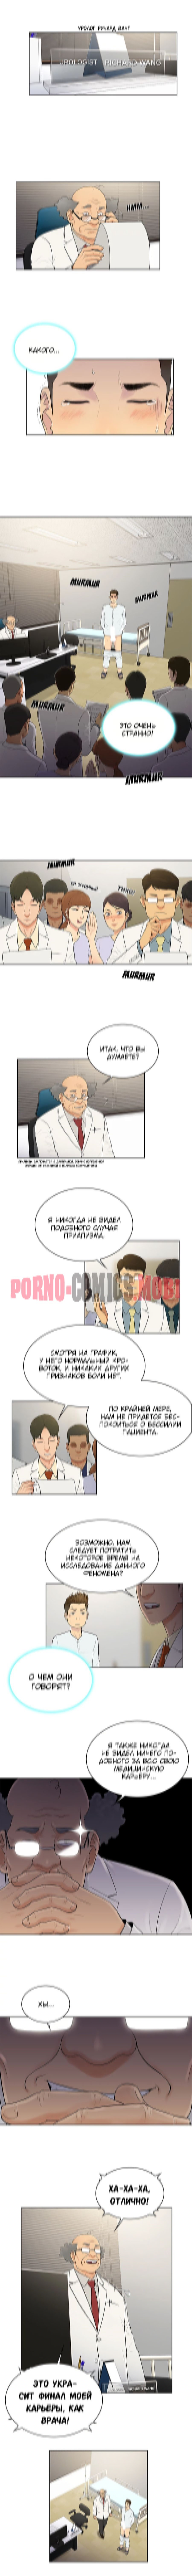 Порно Комикс Стойкий парень Часть 4 смотреть бесплатно онлайн